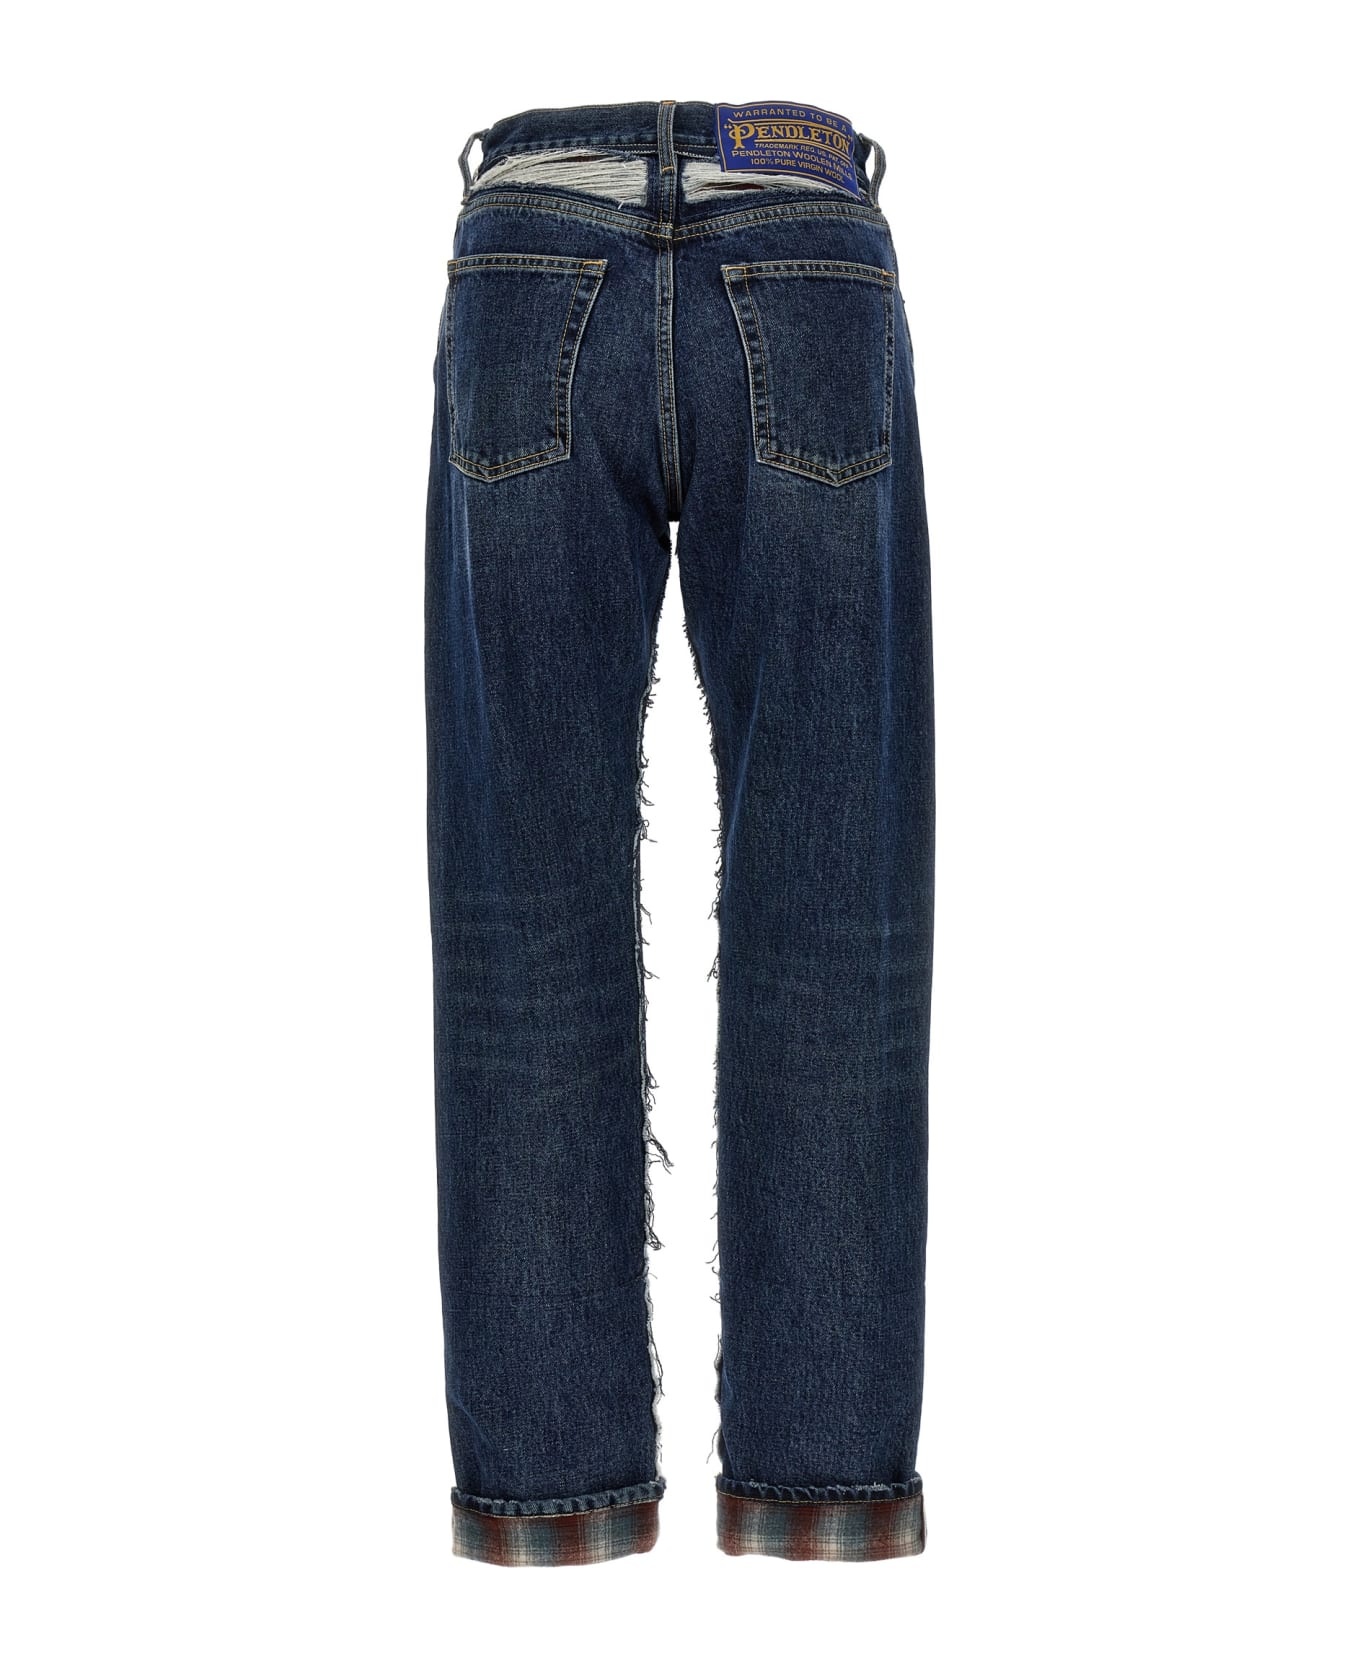 'pendleton' Jeans - 2